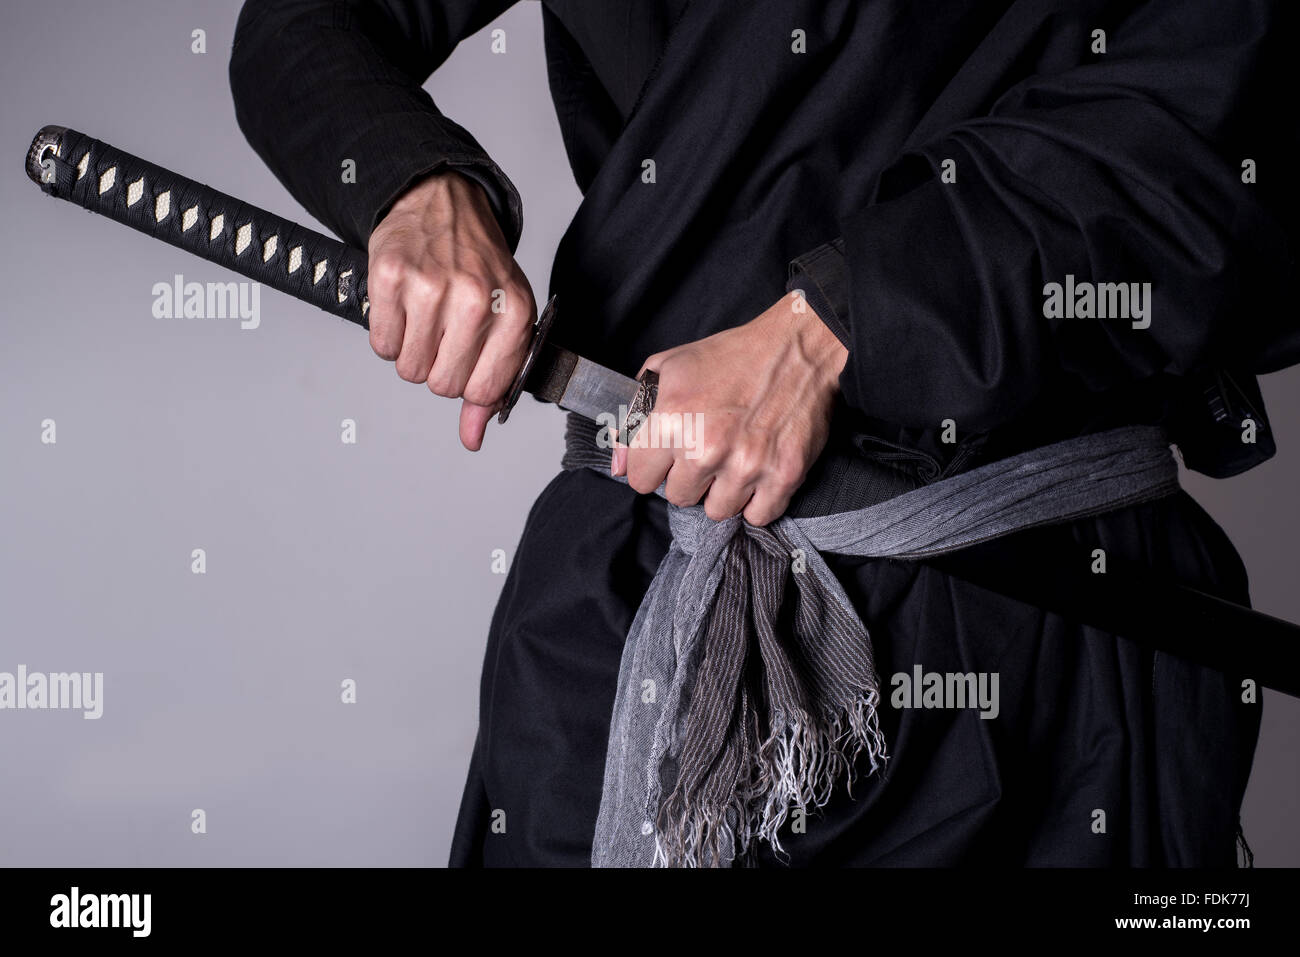 Man with Katana sword Stock Photo - Alamy